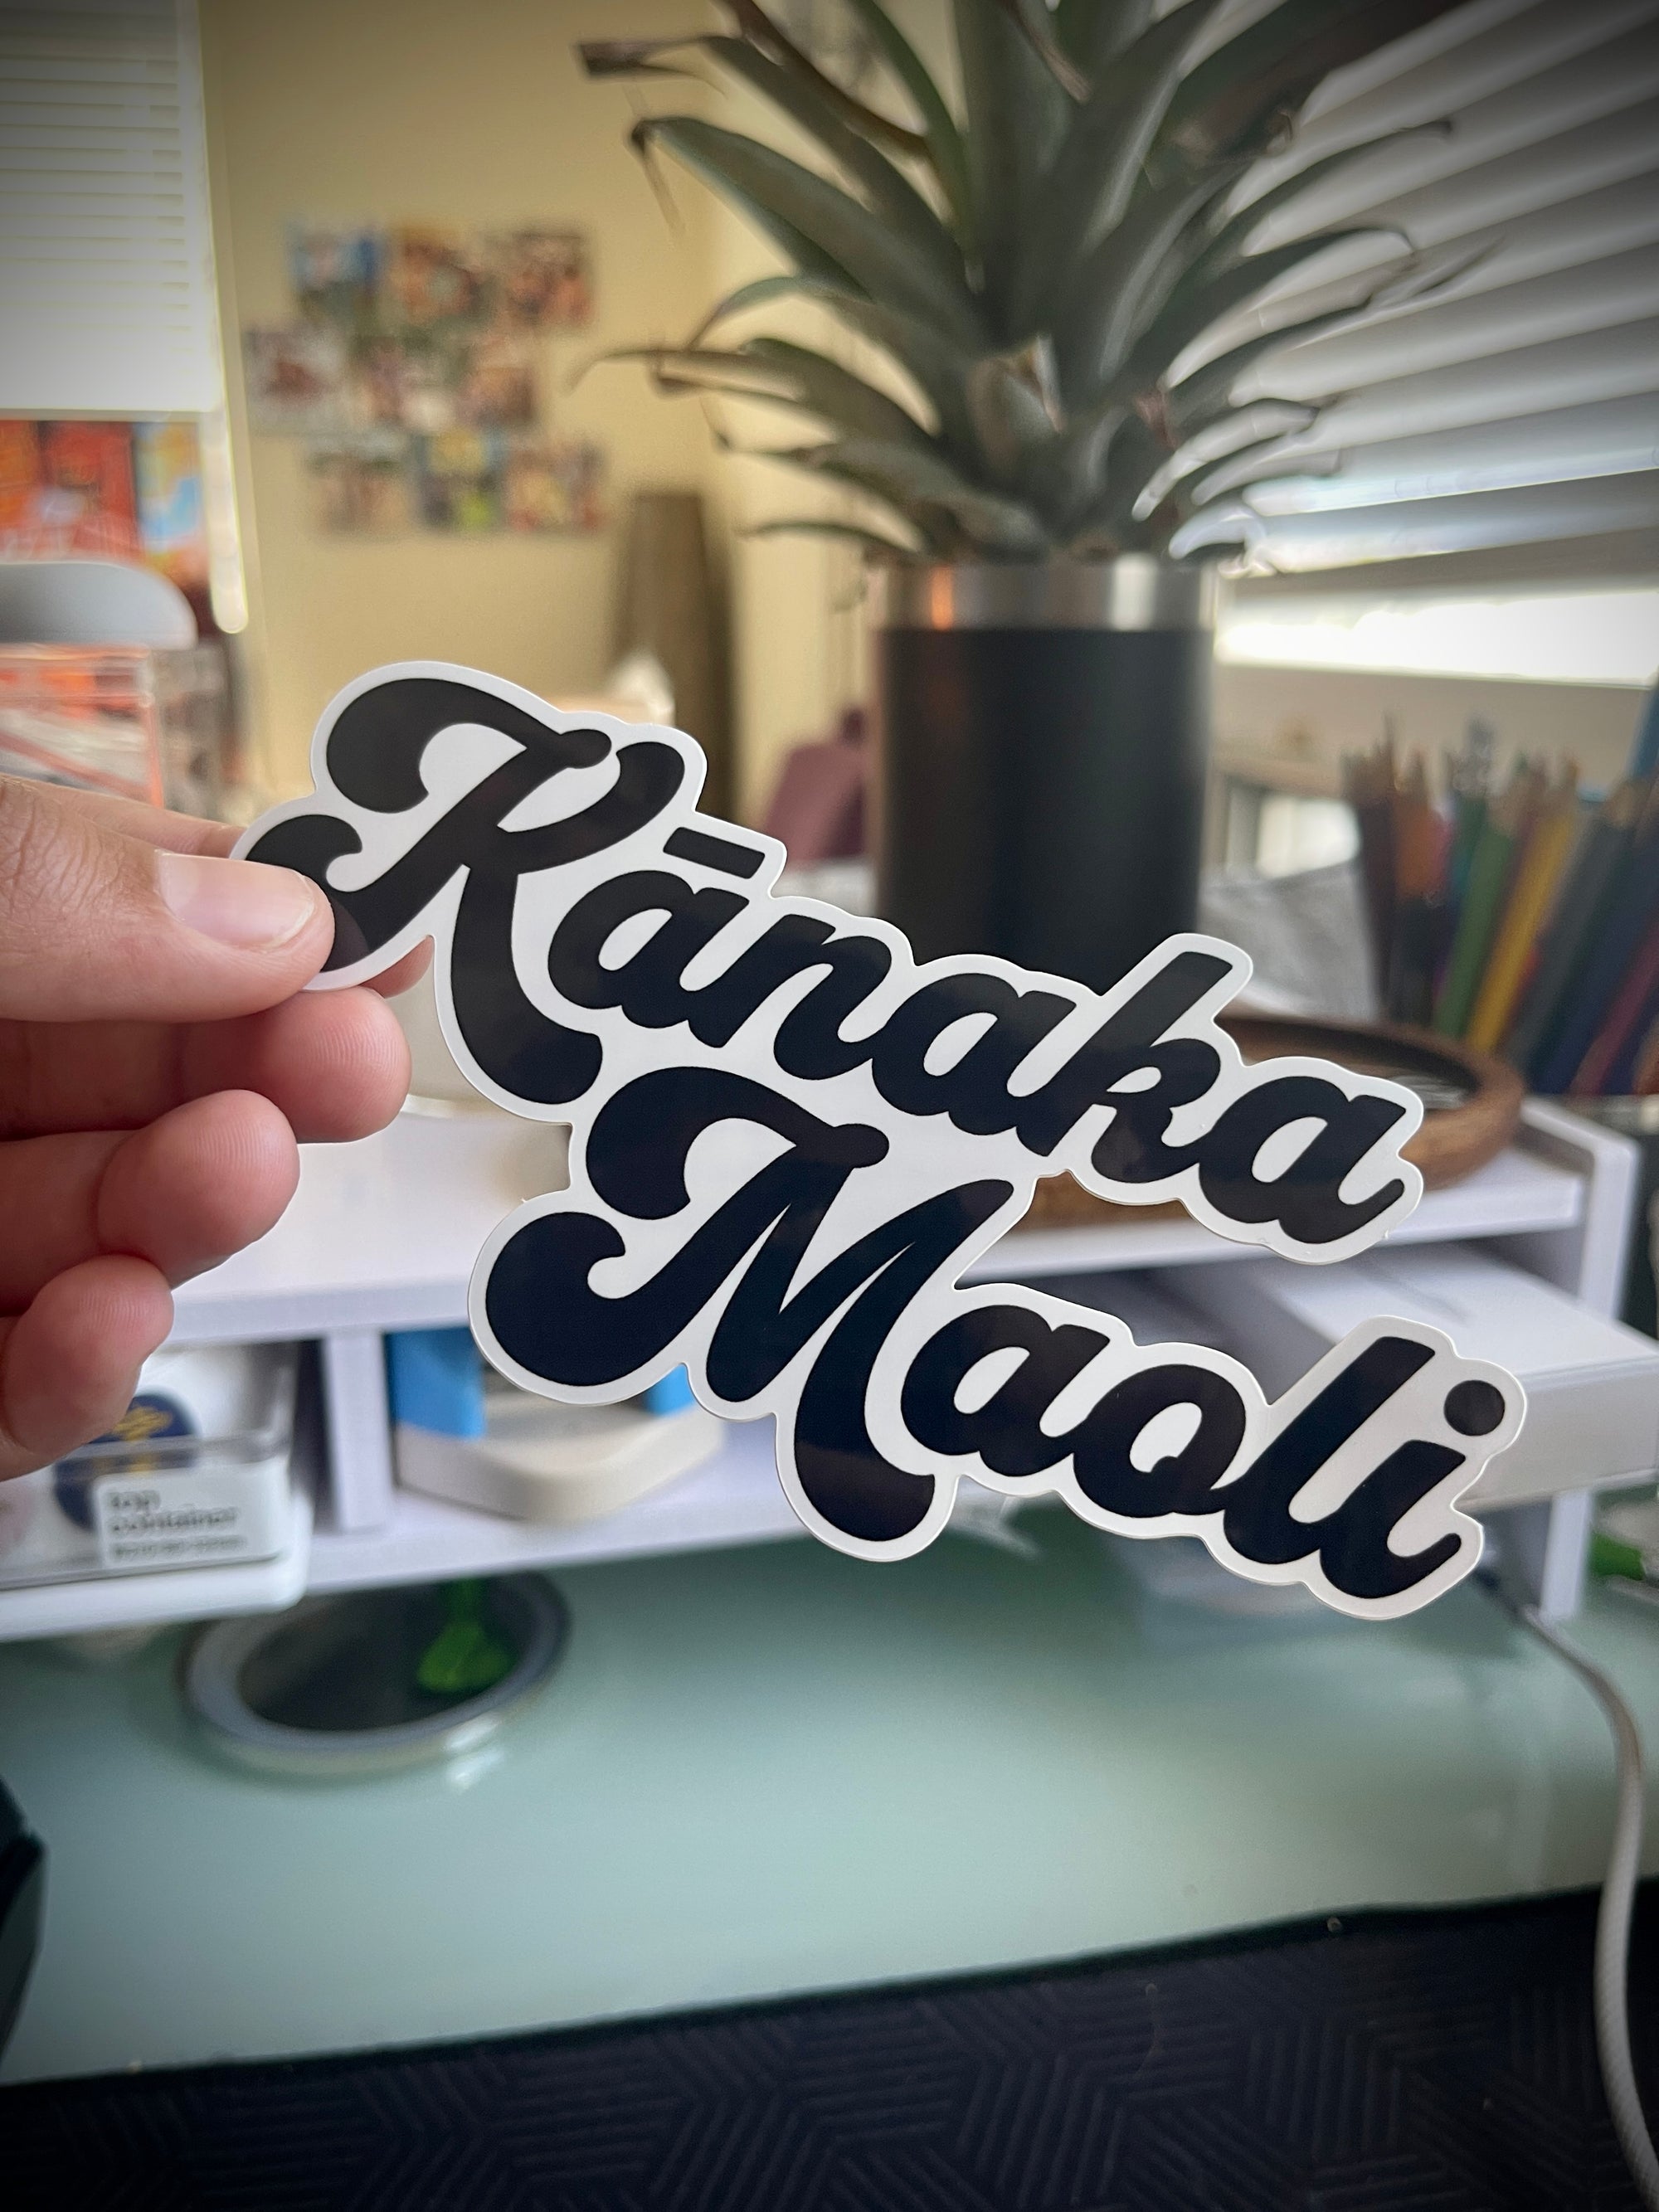 Pop-Up Mākeke - Mahea Leah - Kanaka Maoli Sticker